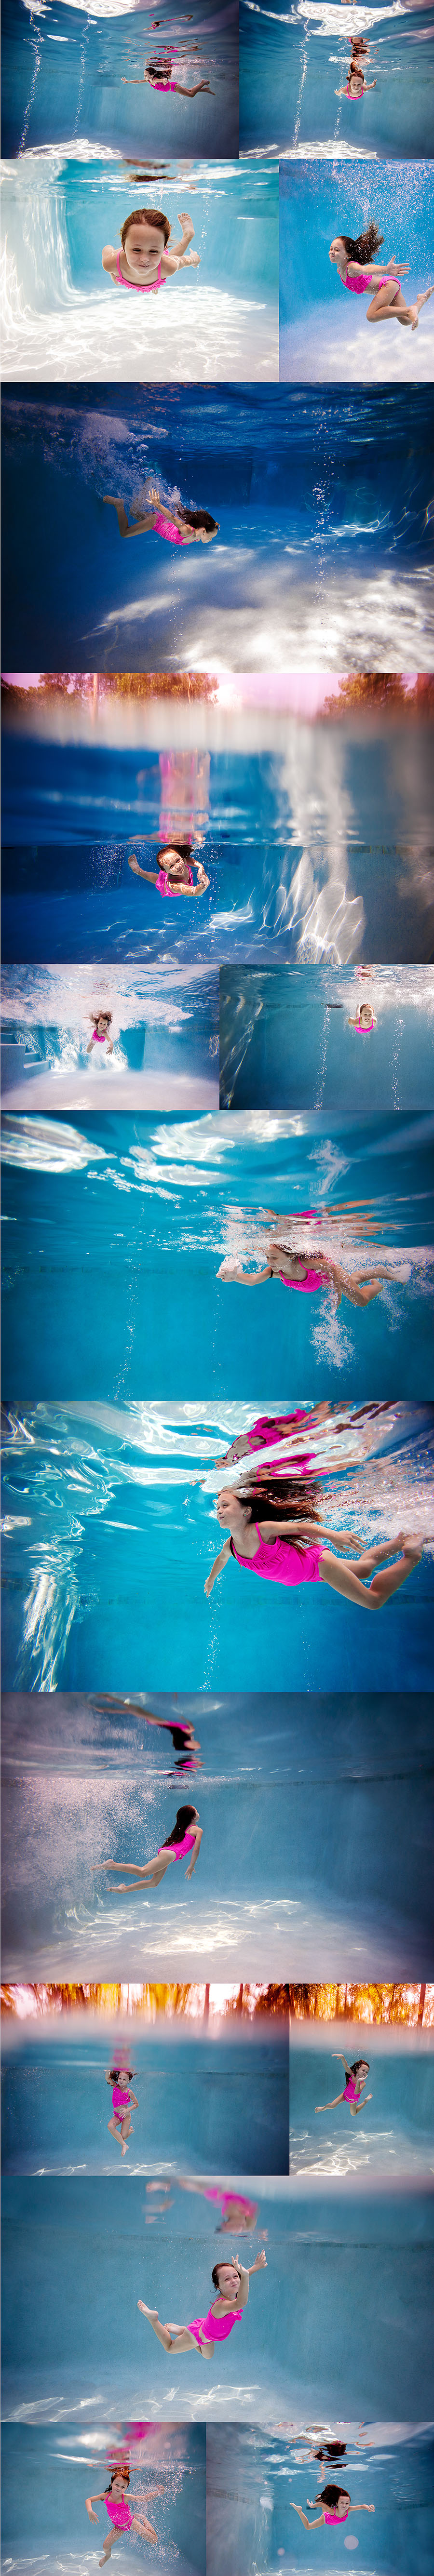 Children Underwater Portraits